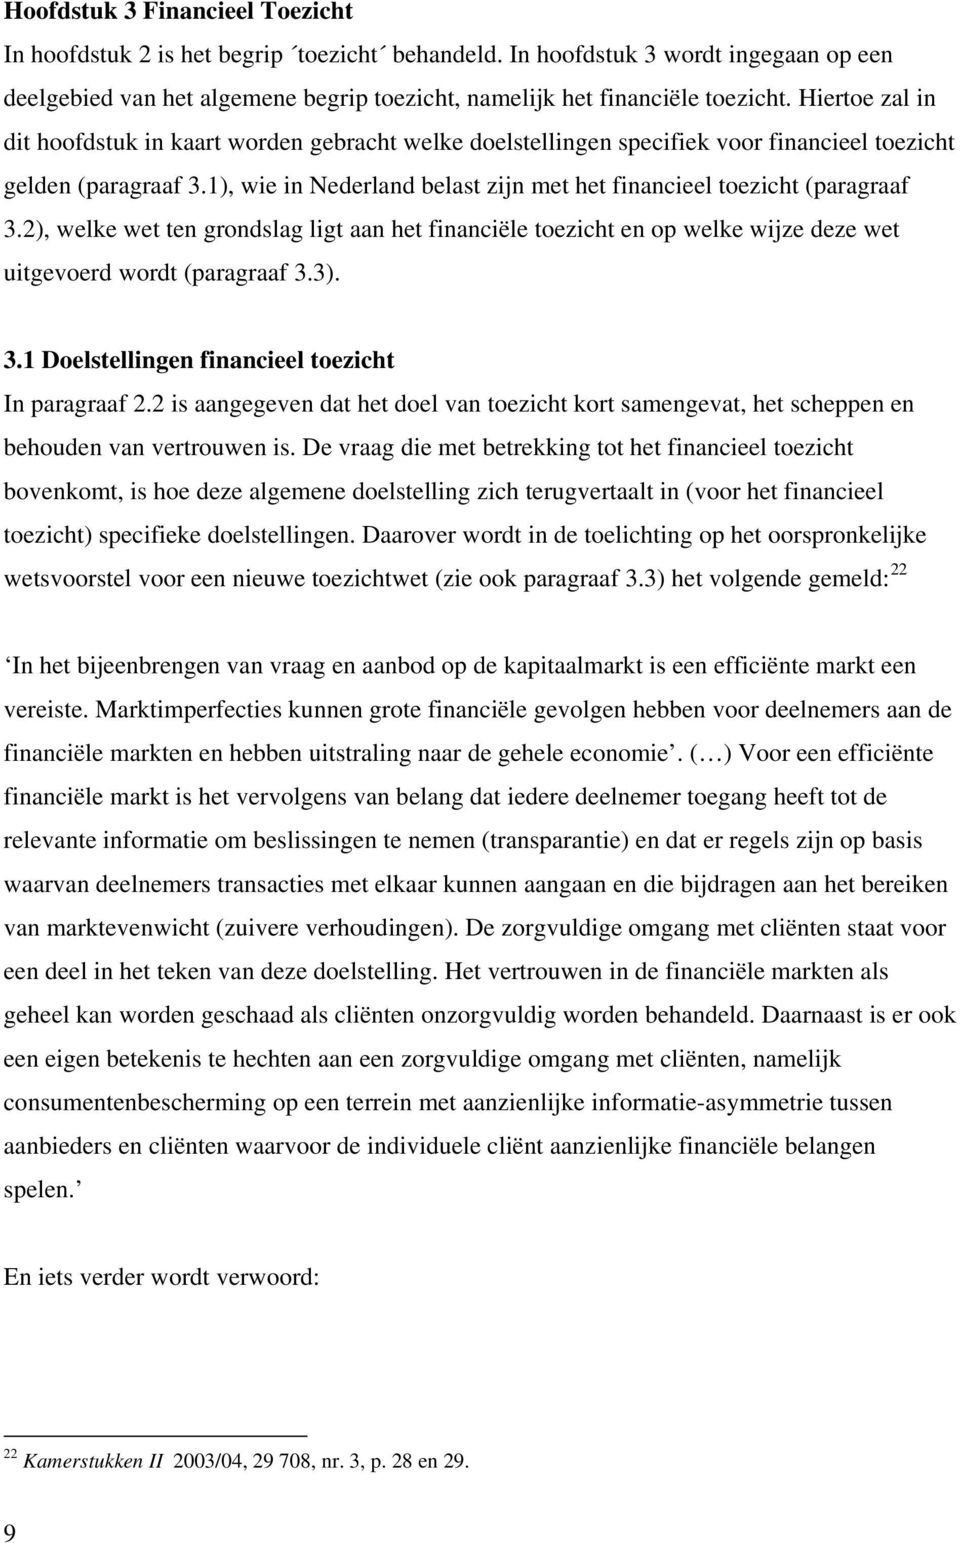 1), wie in Nederland belast zijn met het financieel toezicht (paragraaf 3.2), welke wet ten grondslag ligt aan het financiële toezicht en op welke wijze deze wet uitgevoerd wordt (paragraaf 3.3). 3.1 Doelstellingen financieel toezicht In paragraaf 2.